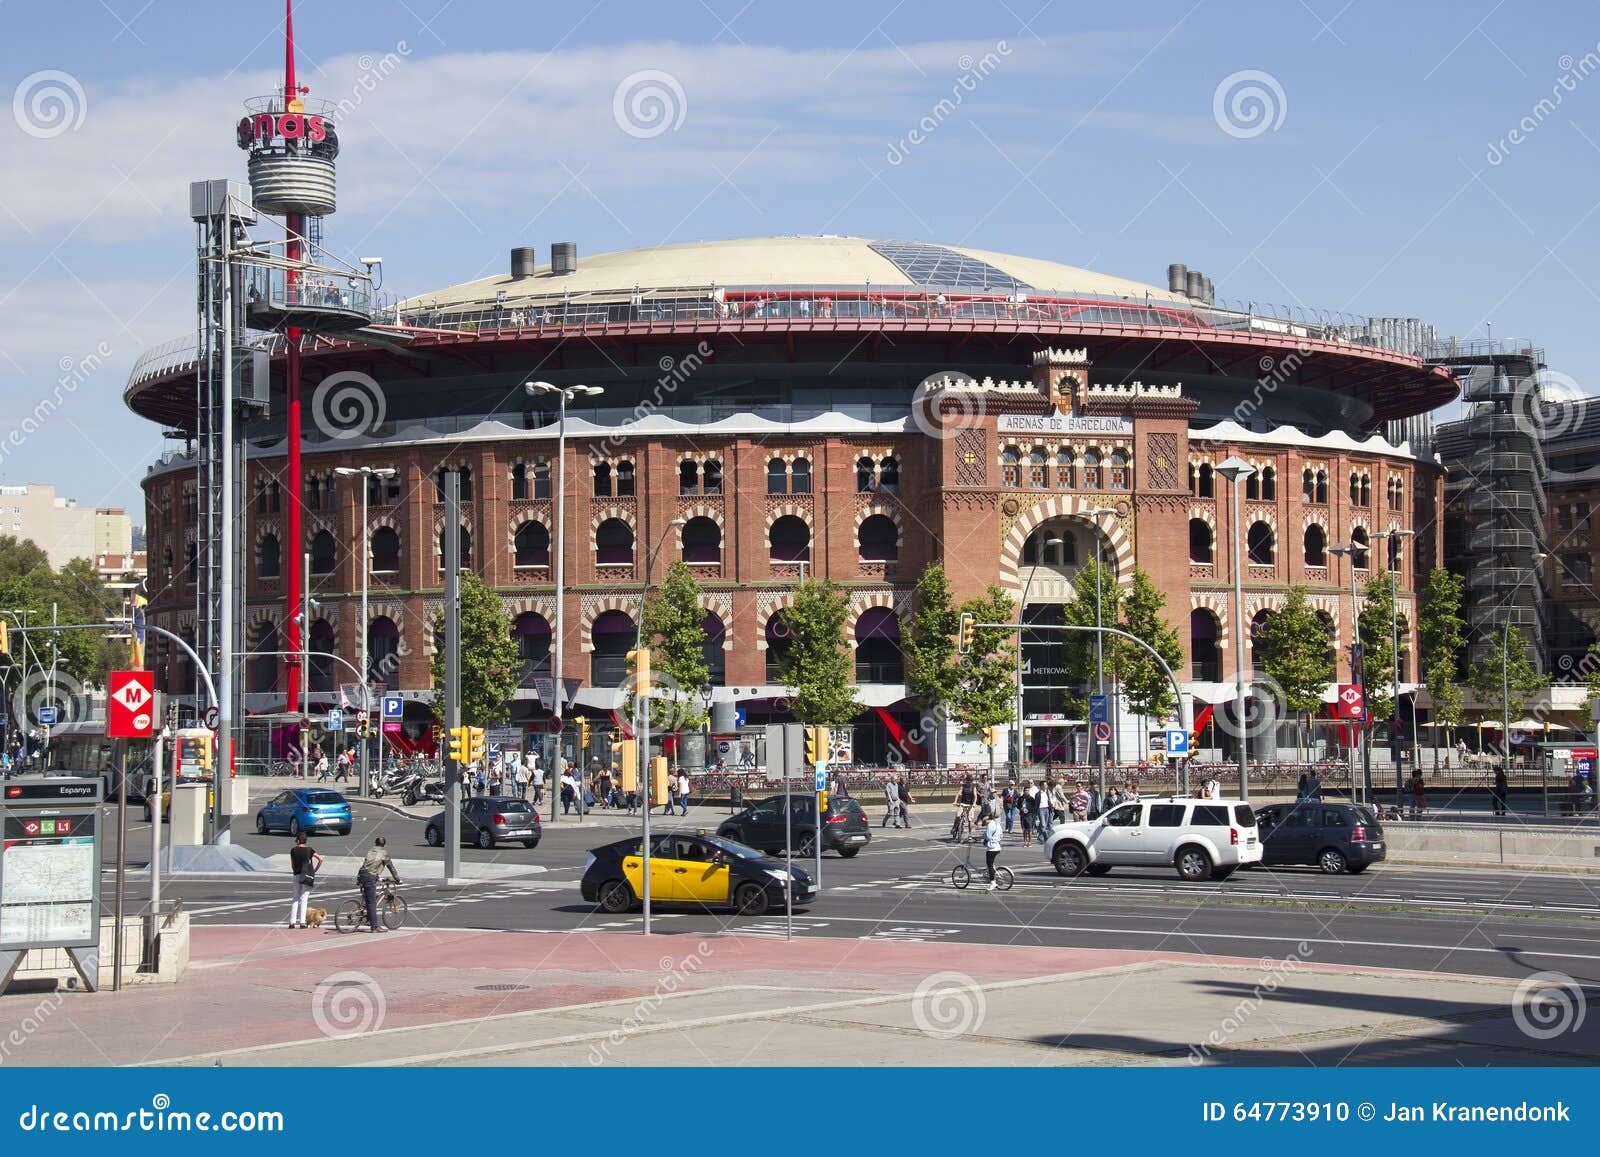 Arena de Barcelona, Espanha. Barcelona, Espanha - 24 de maio de 2015: A arena da tourada de Barcelona, renovada e mudada em um shopping em Barcelona, Espanha o 24 de maio de 2015